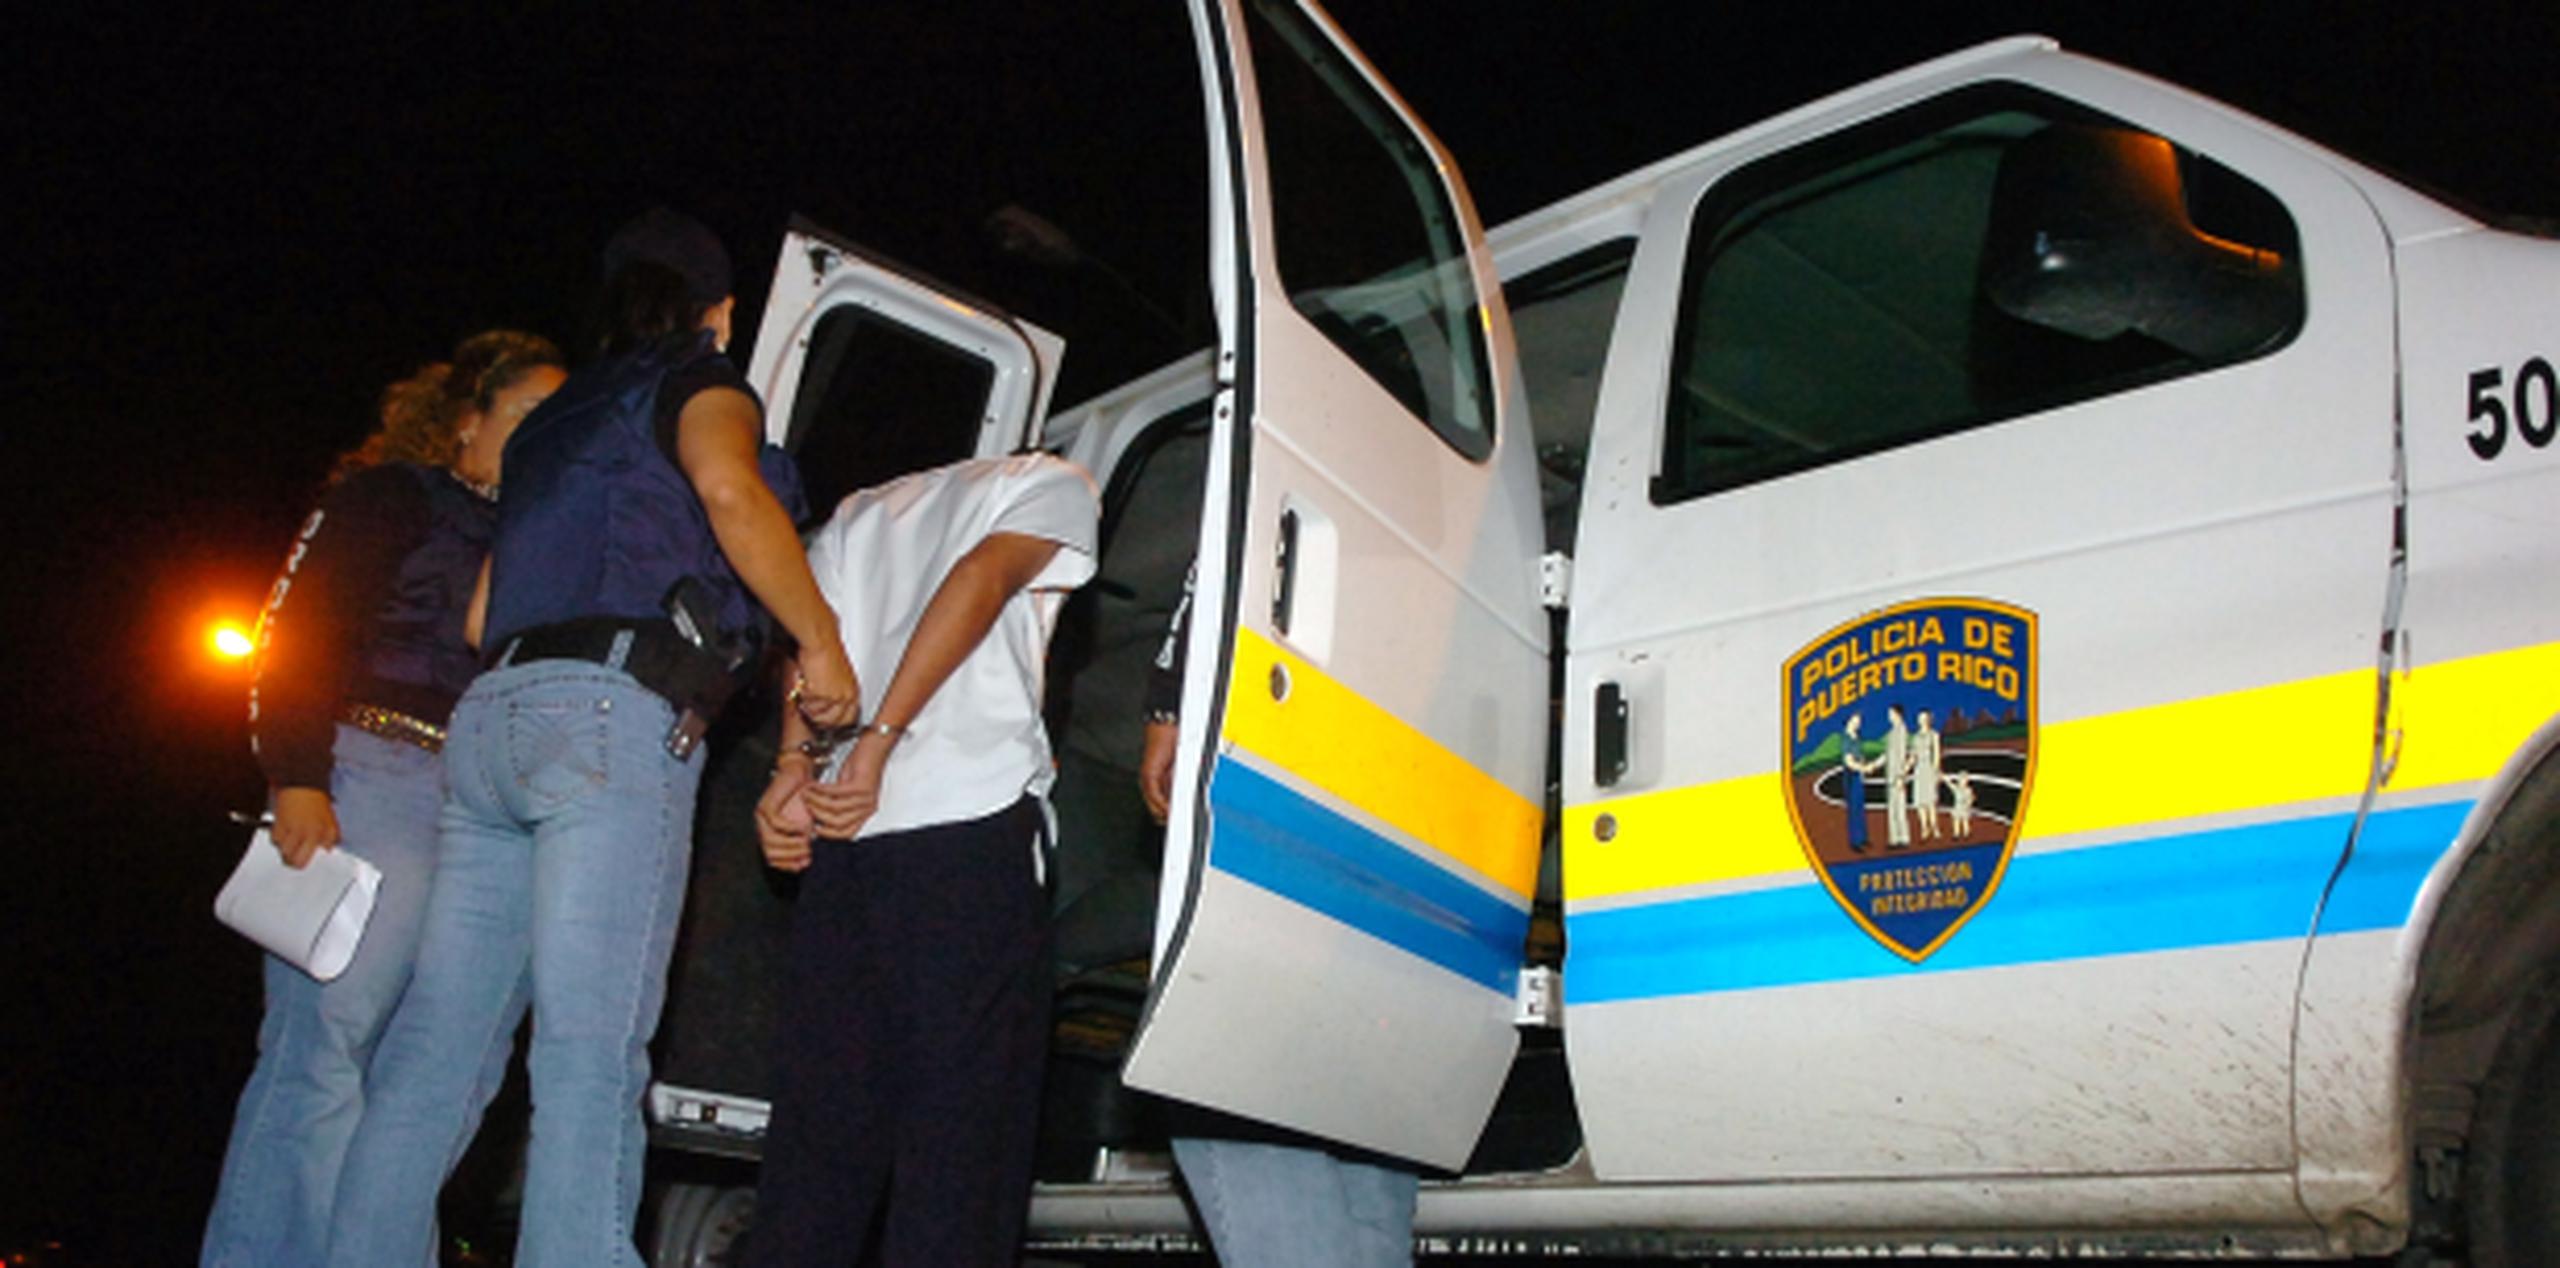 Los arrestos fueron realizados por agentes adscritos a la División de Drogas y Narcóticos de Mayagüez.(Archivo)